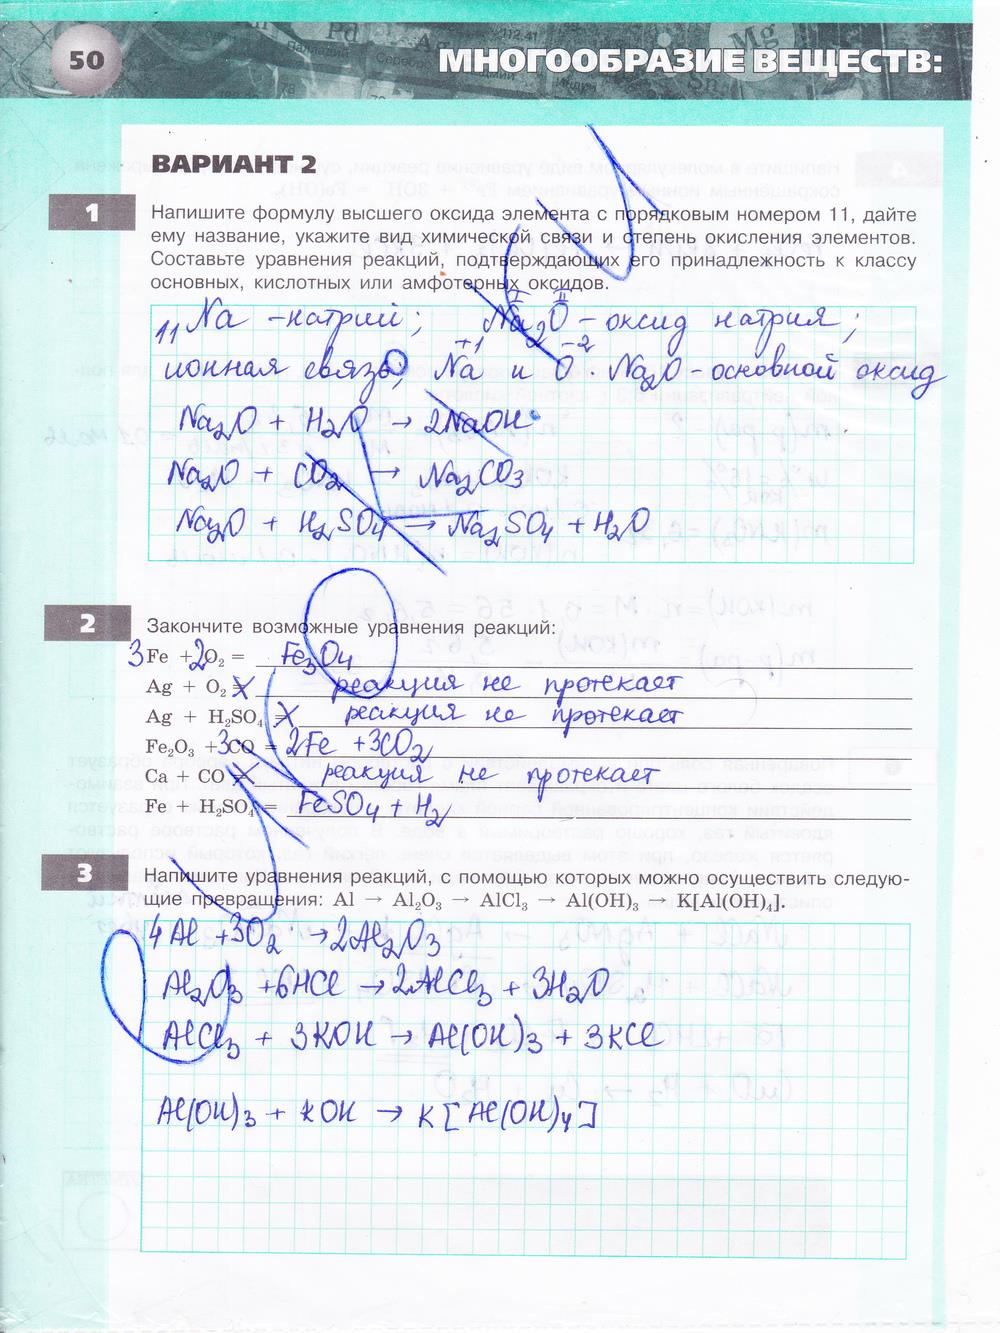 гдз 9 класс тетрадь-экзаменатор страница 50 химия Бобылева, Бирюлина